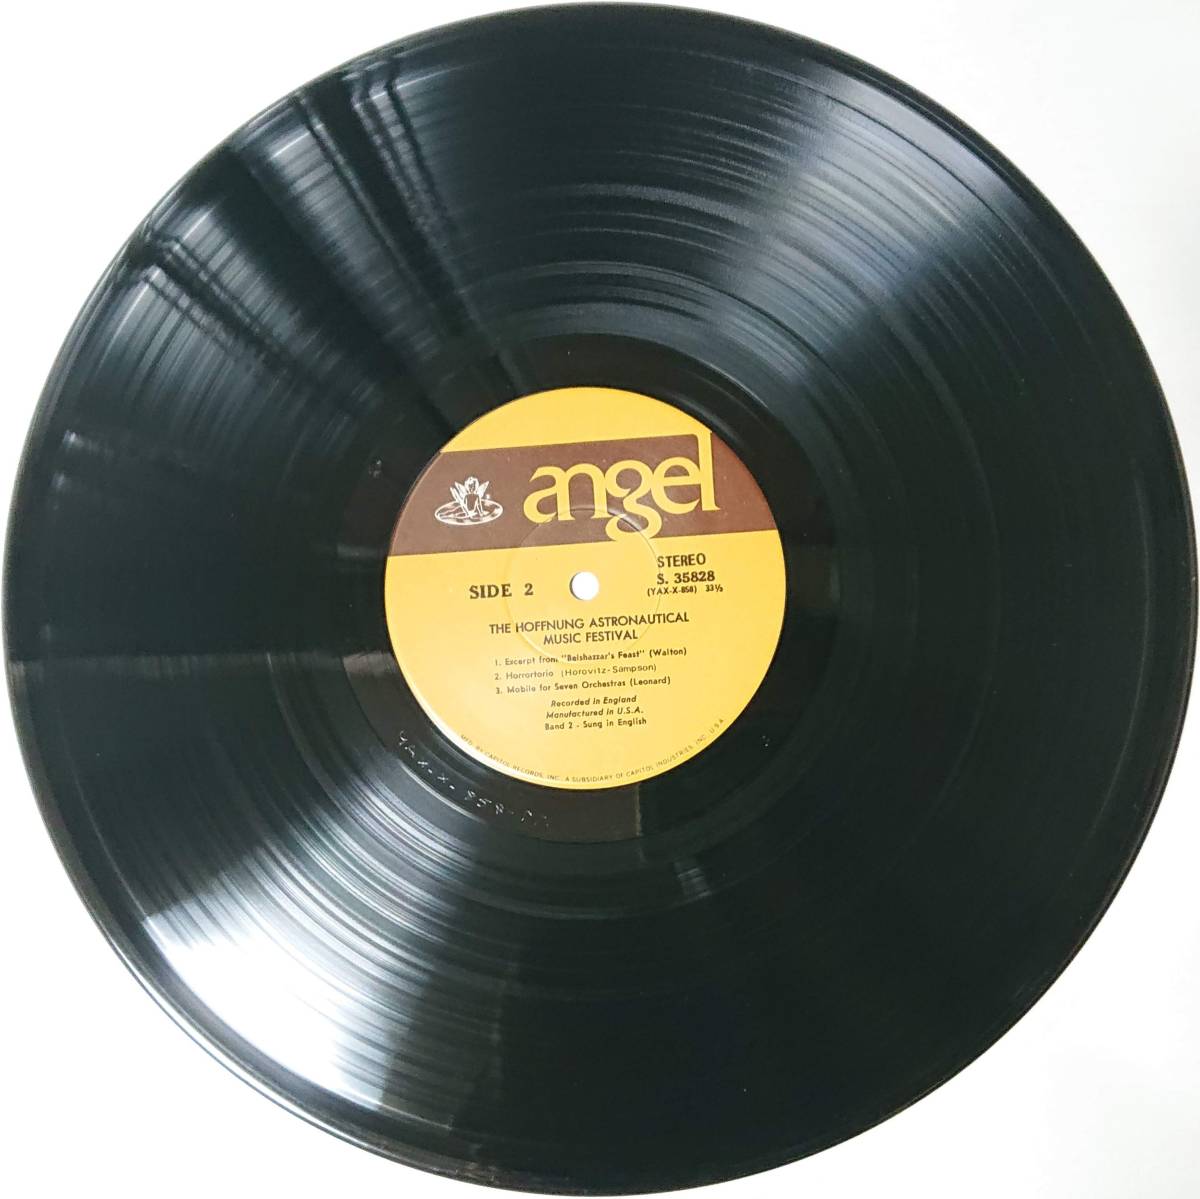 ジェラルド・ホフヌング : The Hoffnung Astronautical Music Festival 1961 US盤 中古 アナログ LPレコード盤 1961年 S 35828 M2-KDO-677_画像5